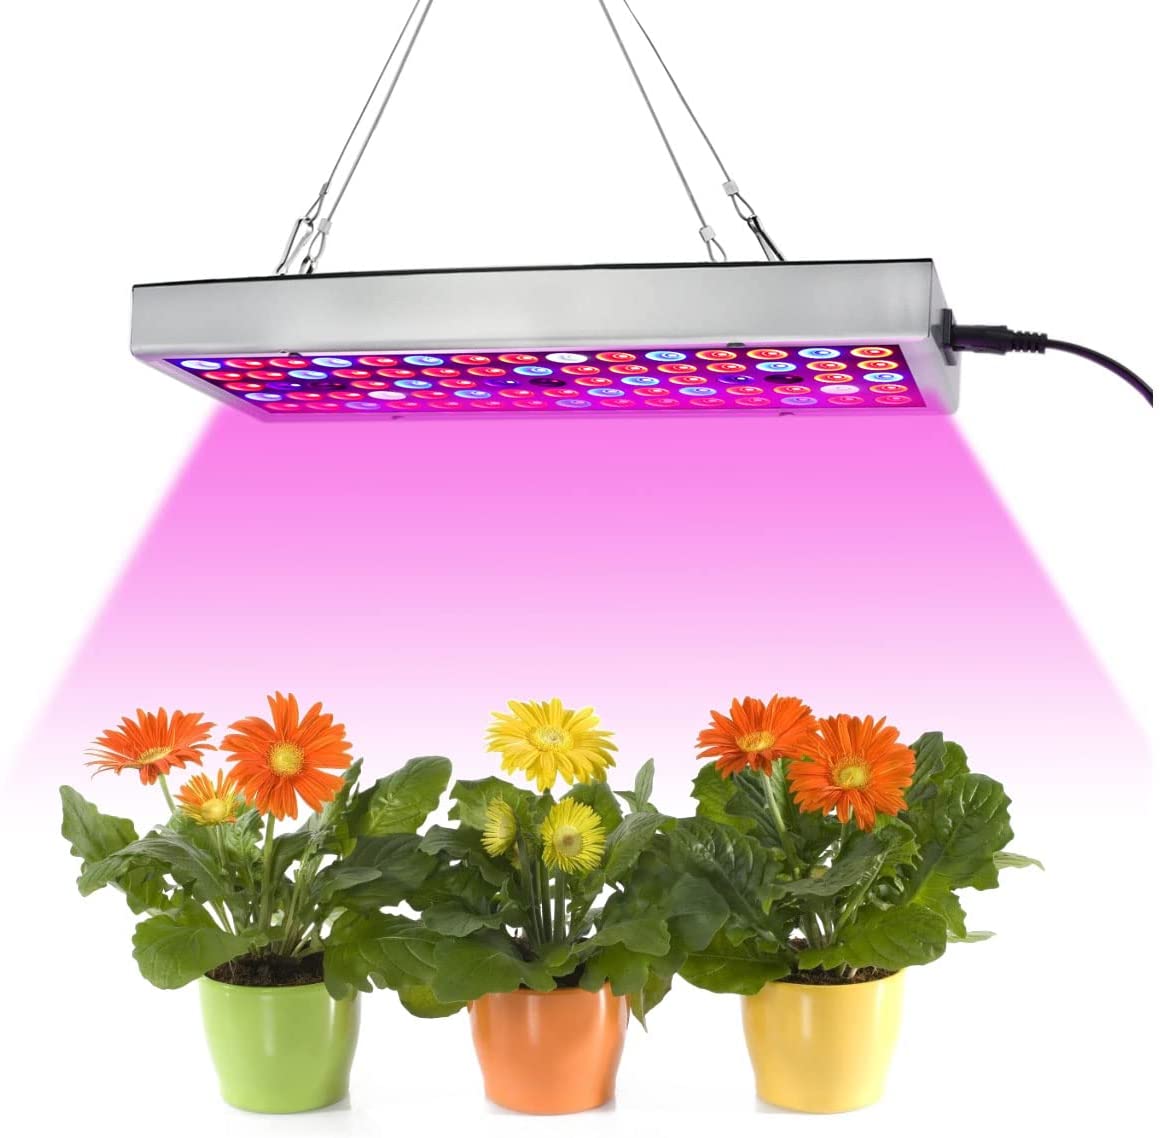 Juhefa LED Grow Lights for indoor plants $12.23